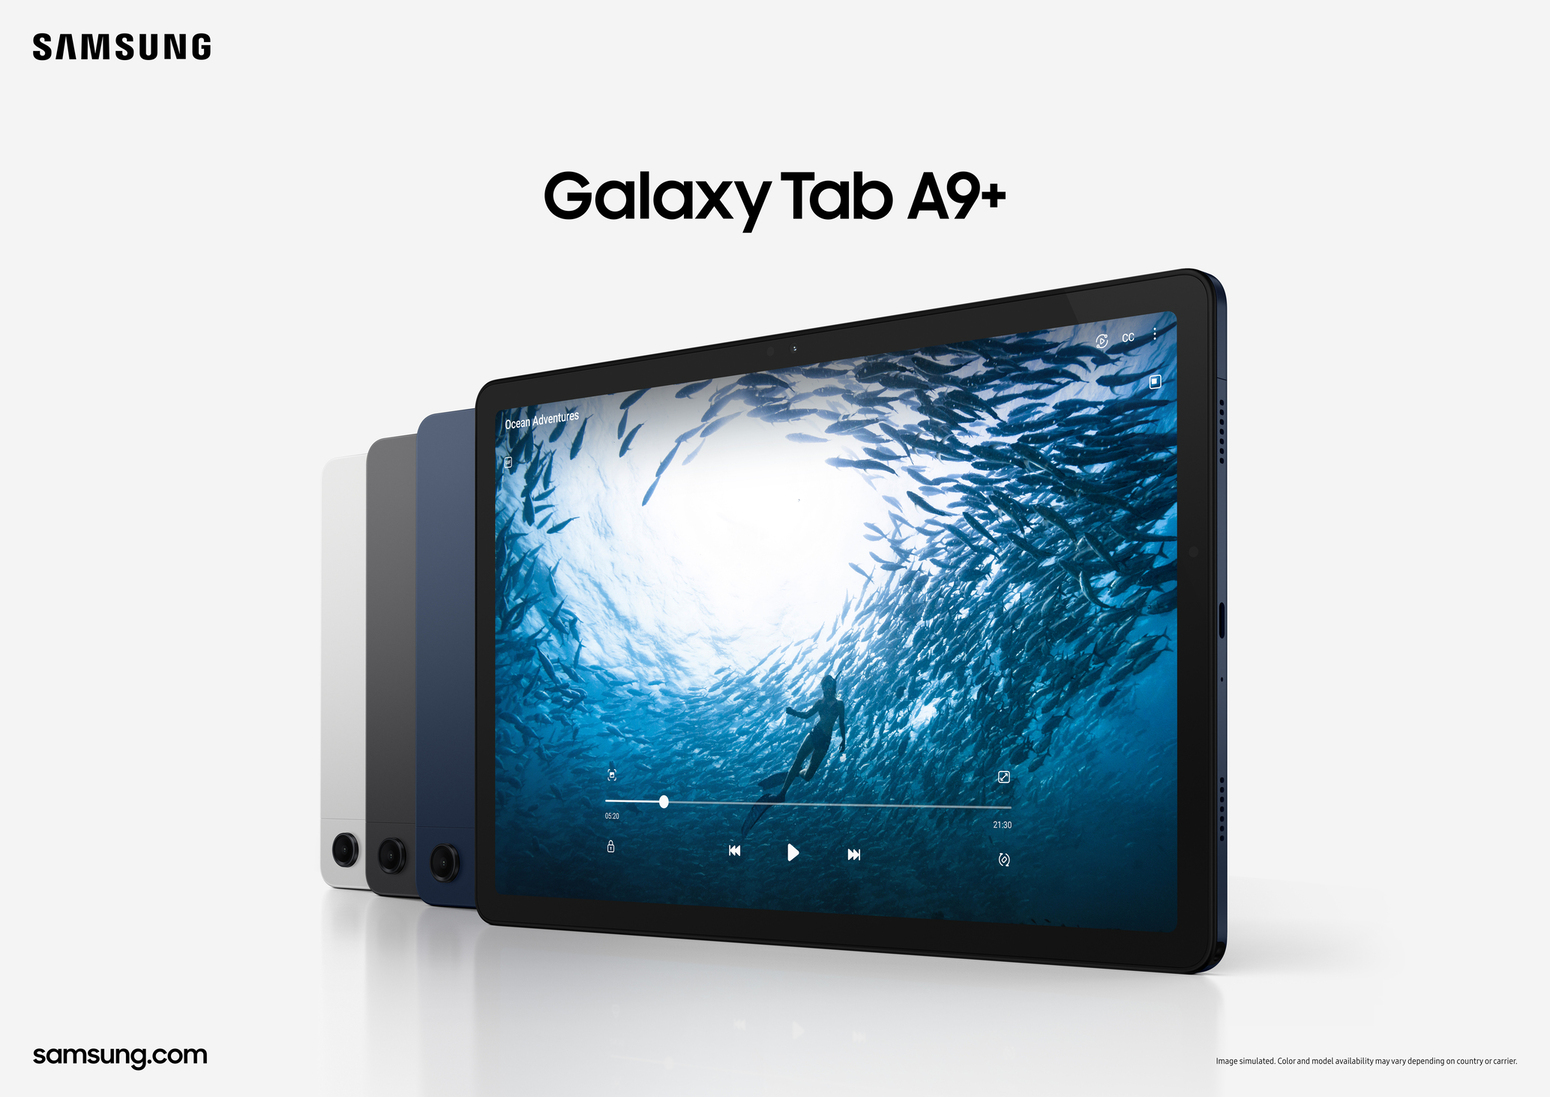 ยกระดับความบันเทิงพร้อมความสามารถในการสร้างสรรค์ผลงานอีกขั้น ไปกับ Samsung Galaxy Tab A9 และ Galaxy Tab A9+